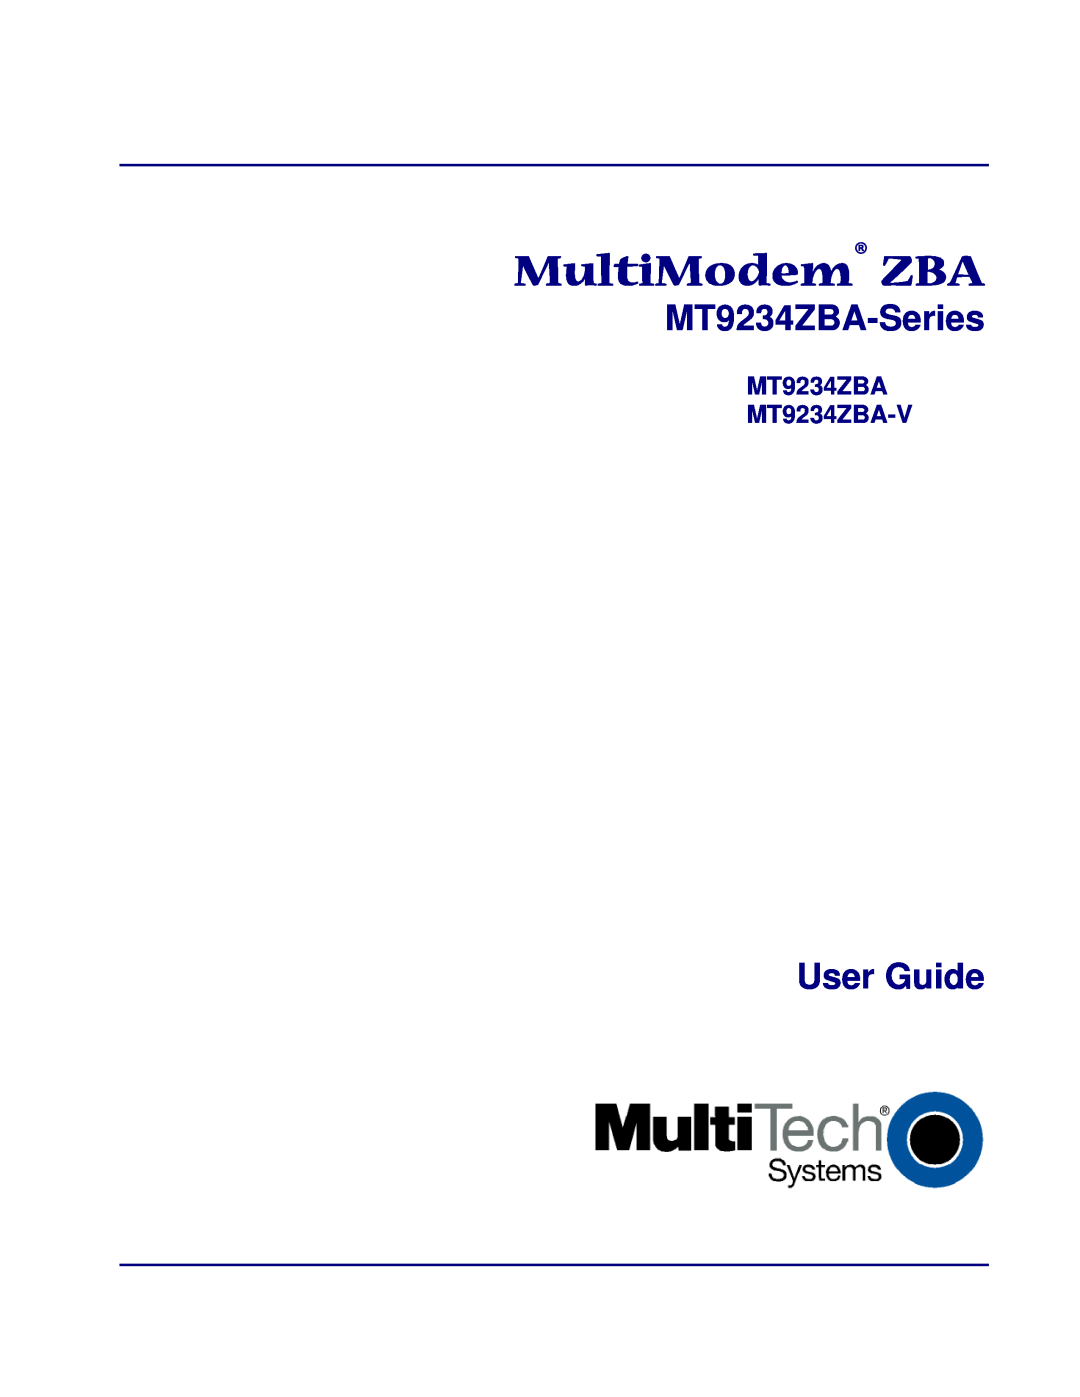 Multi-Tech Systems manual MT9234ZBA MT9234ZBA-V, MultiModem ZBA, MT9234ZBA-Series, User Guide 